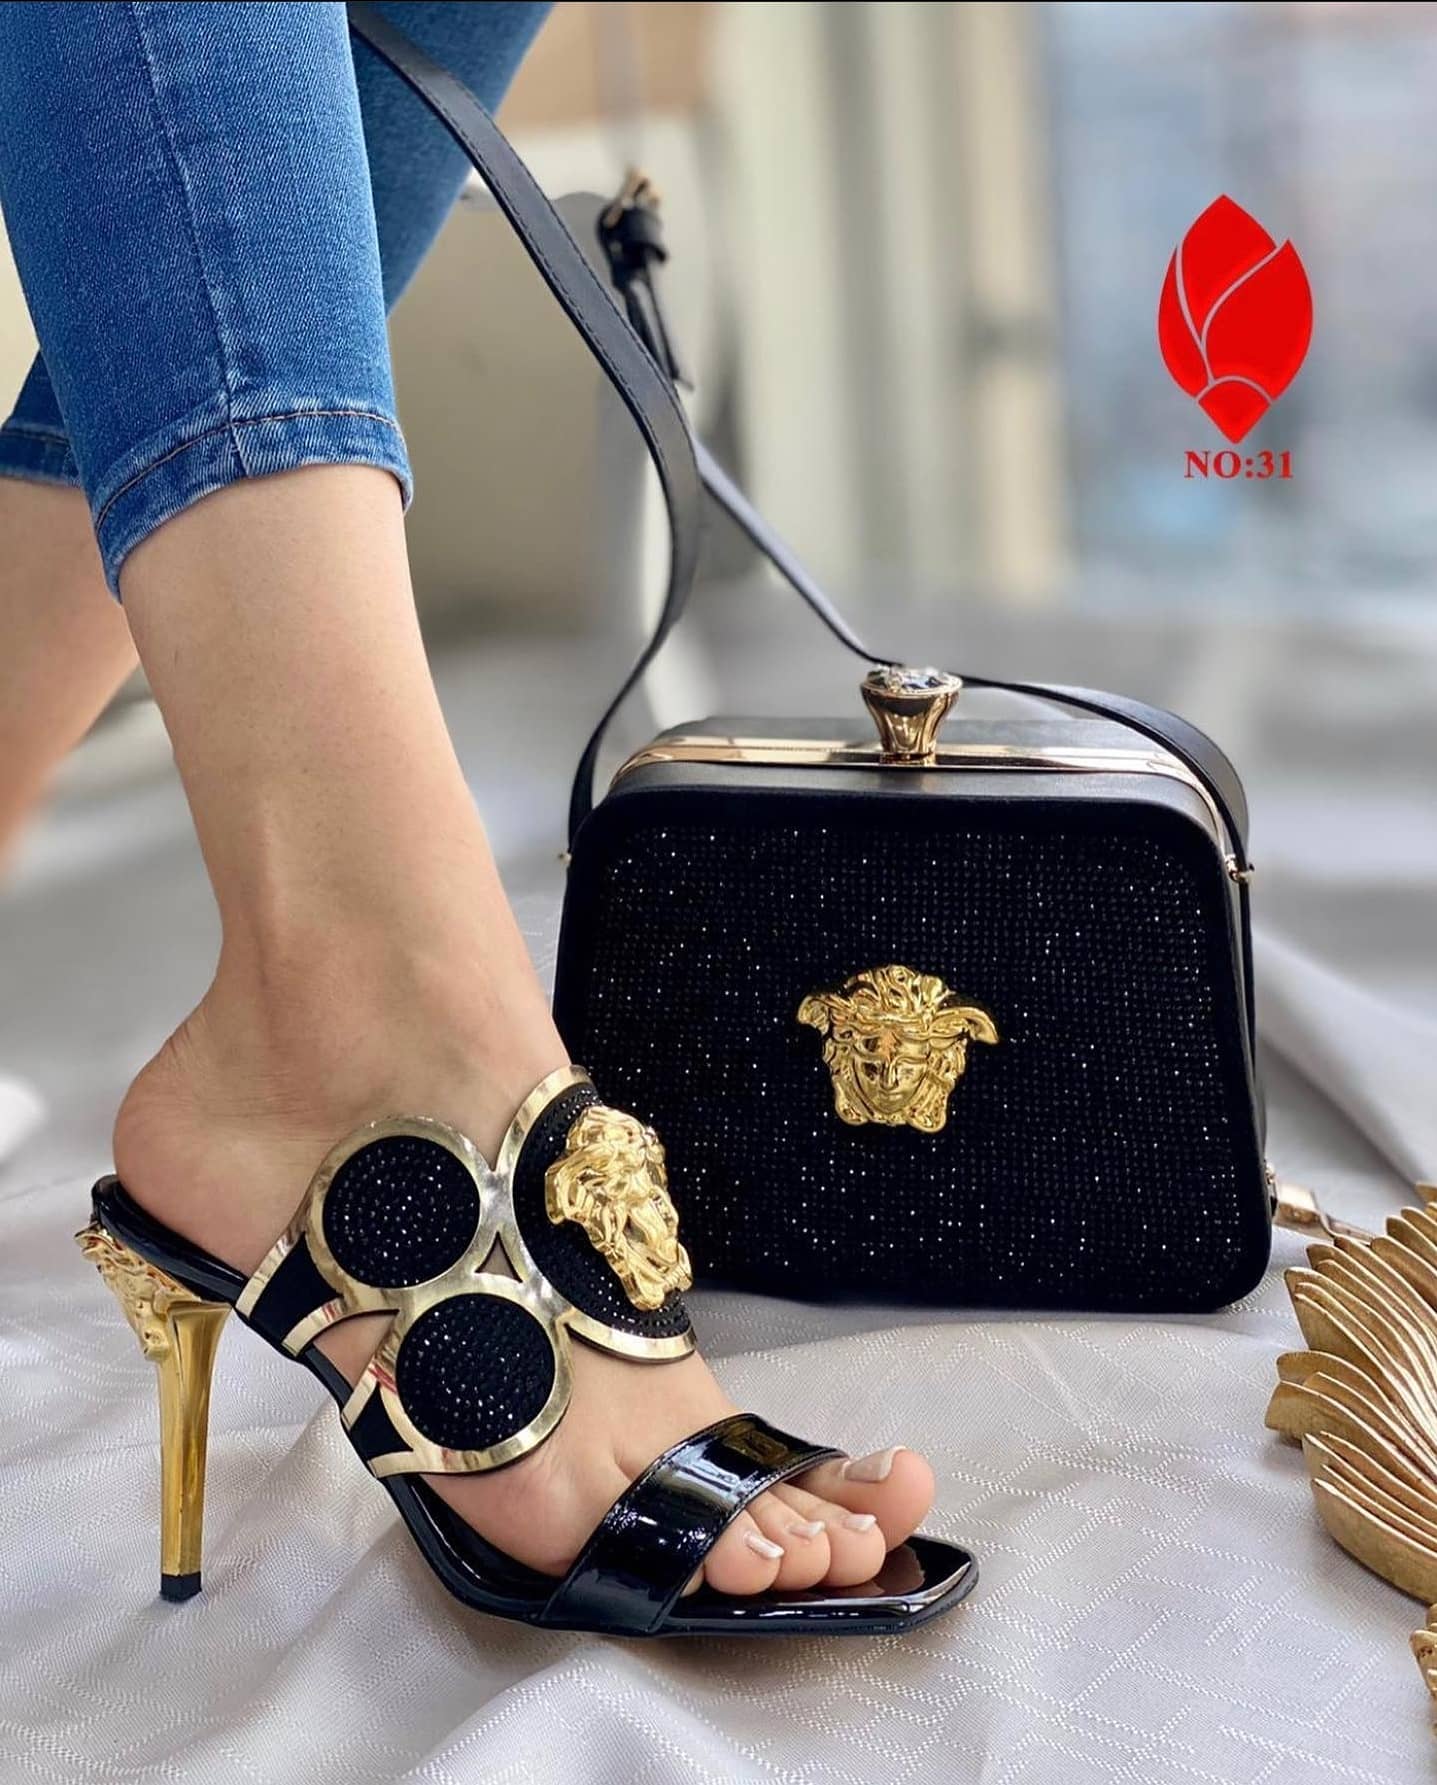 Versace heel collection 2020